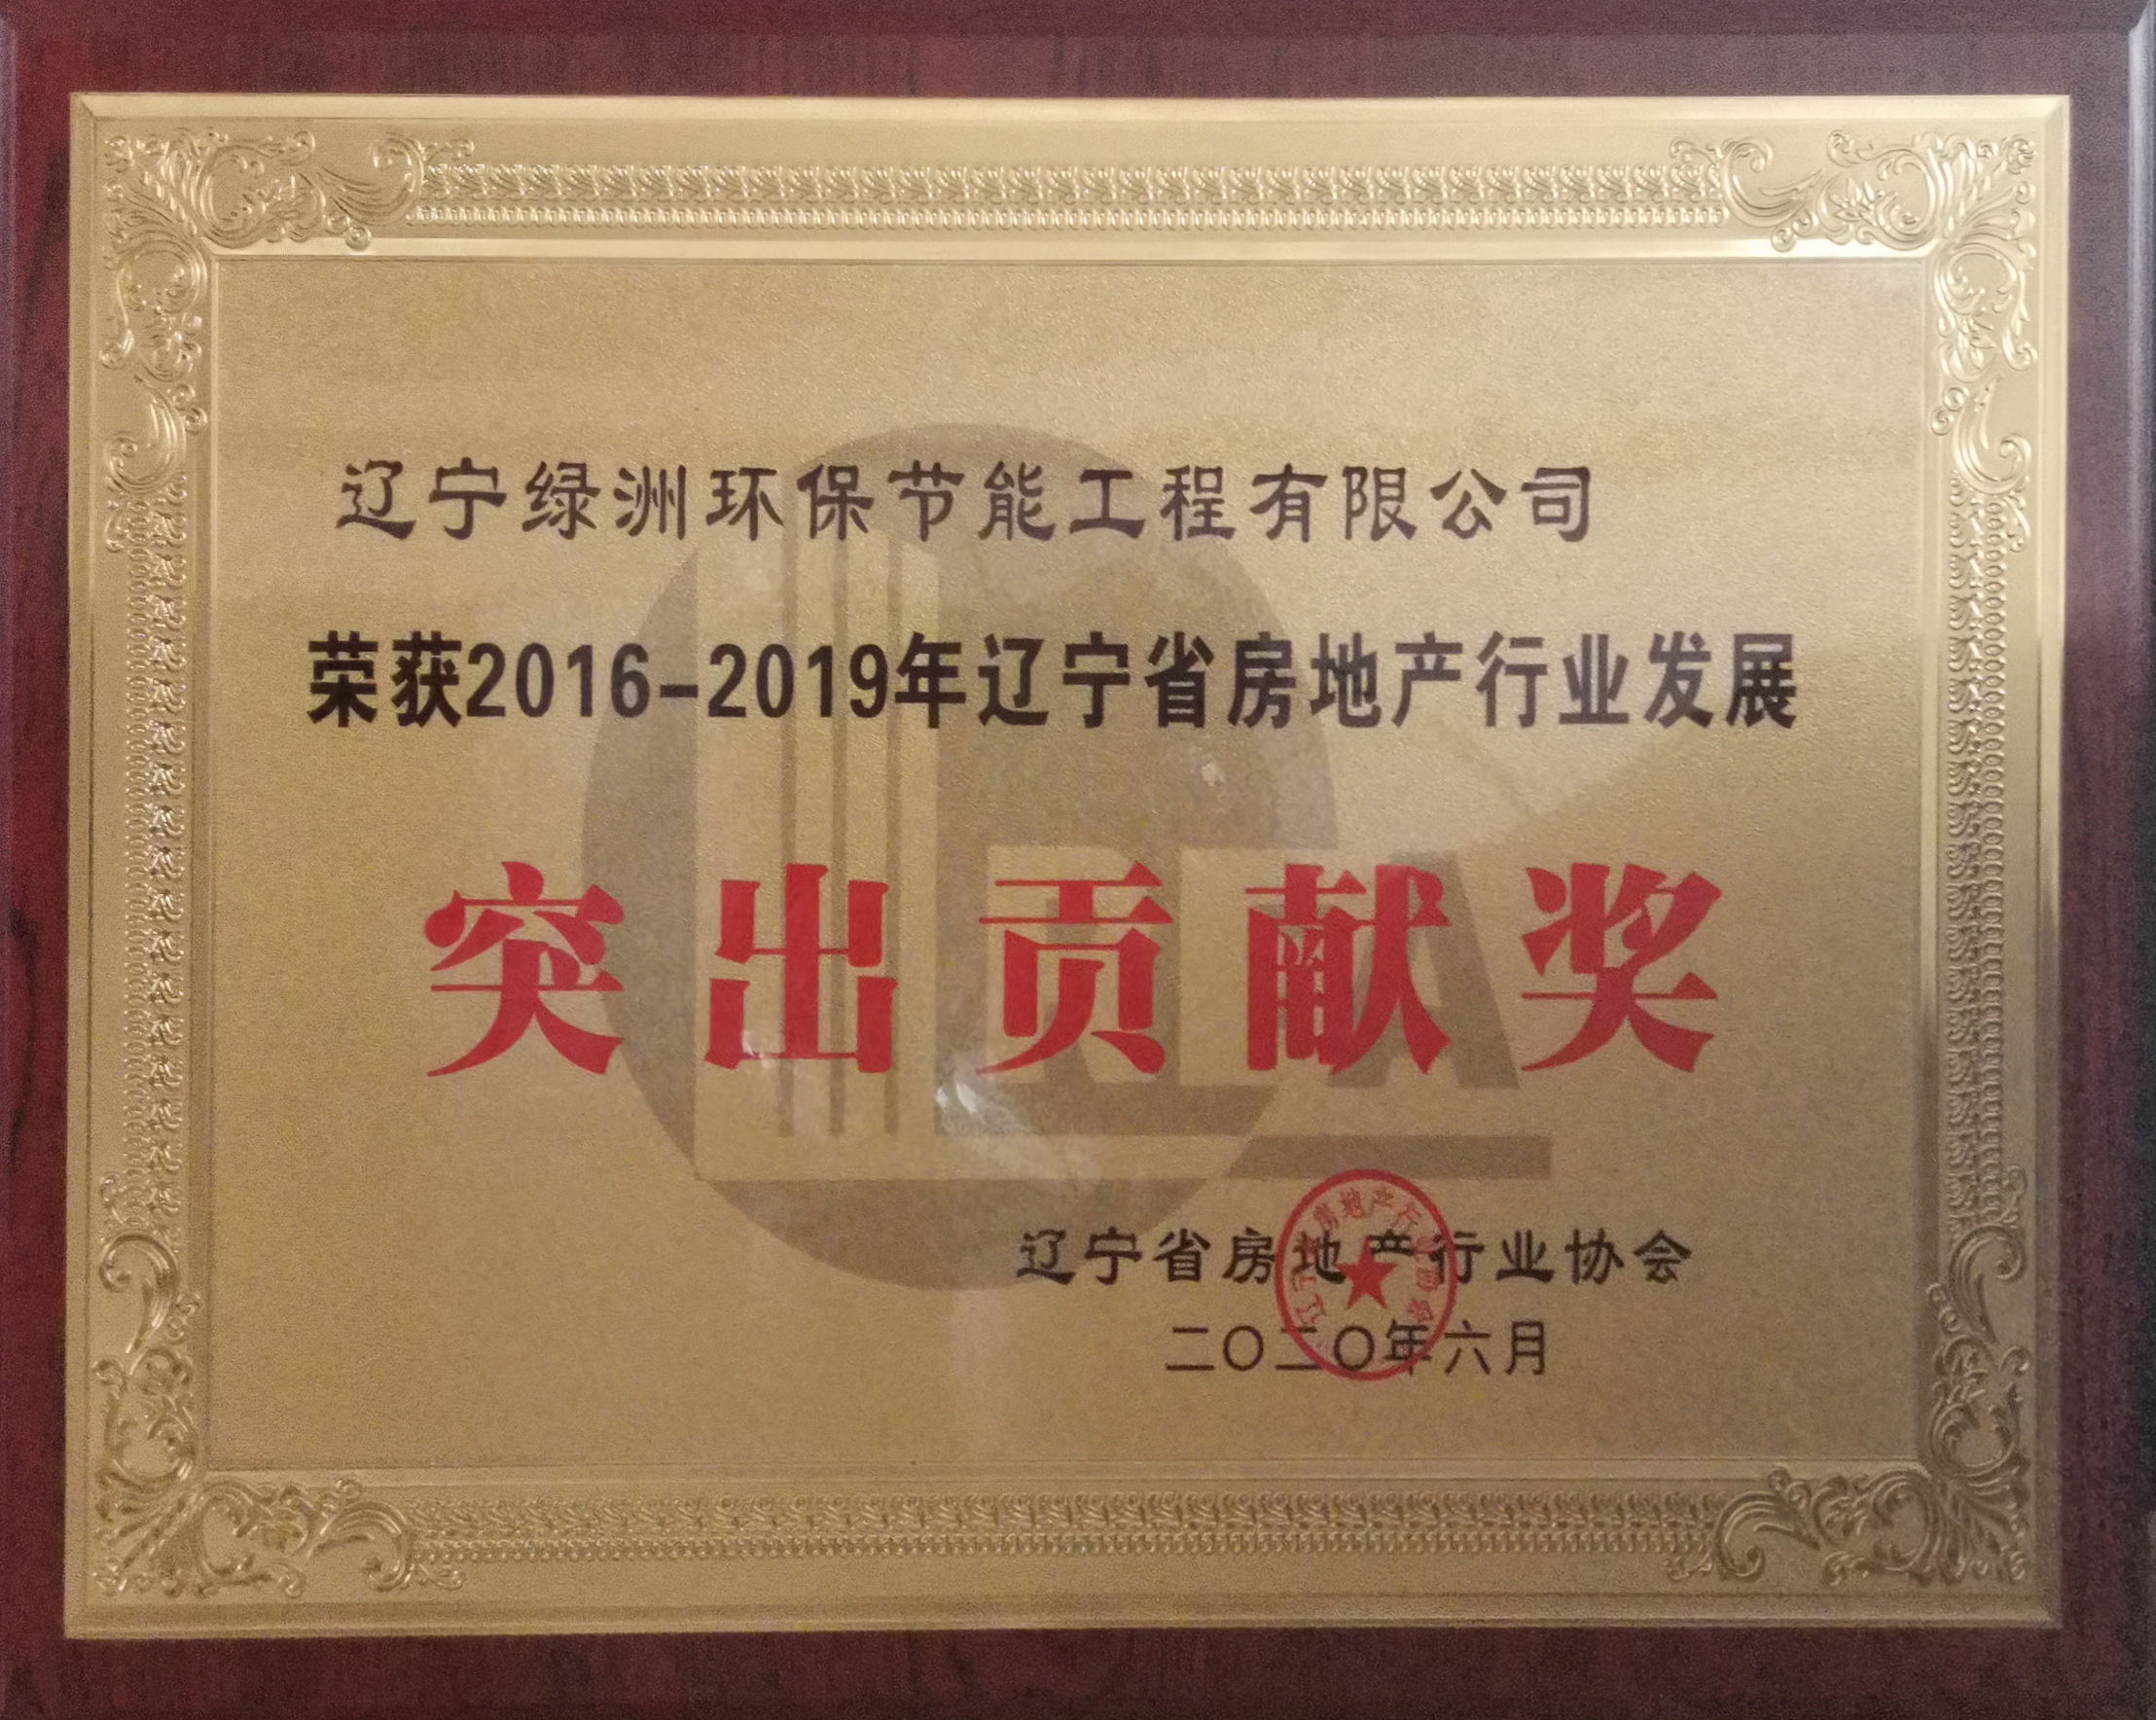 喜訊！熱烈祝賀我司榮獲遼寧省房地產行業發展突出貢獻獎！